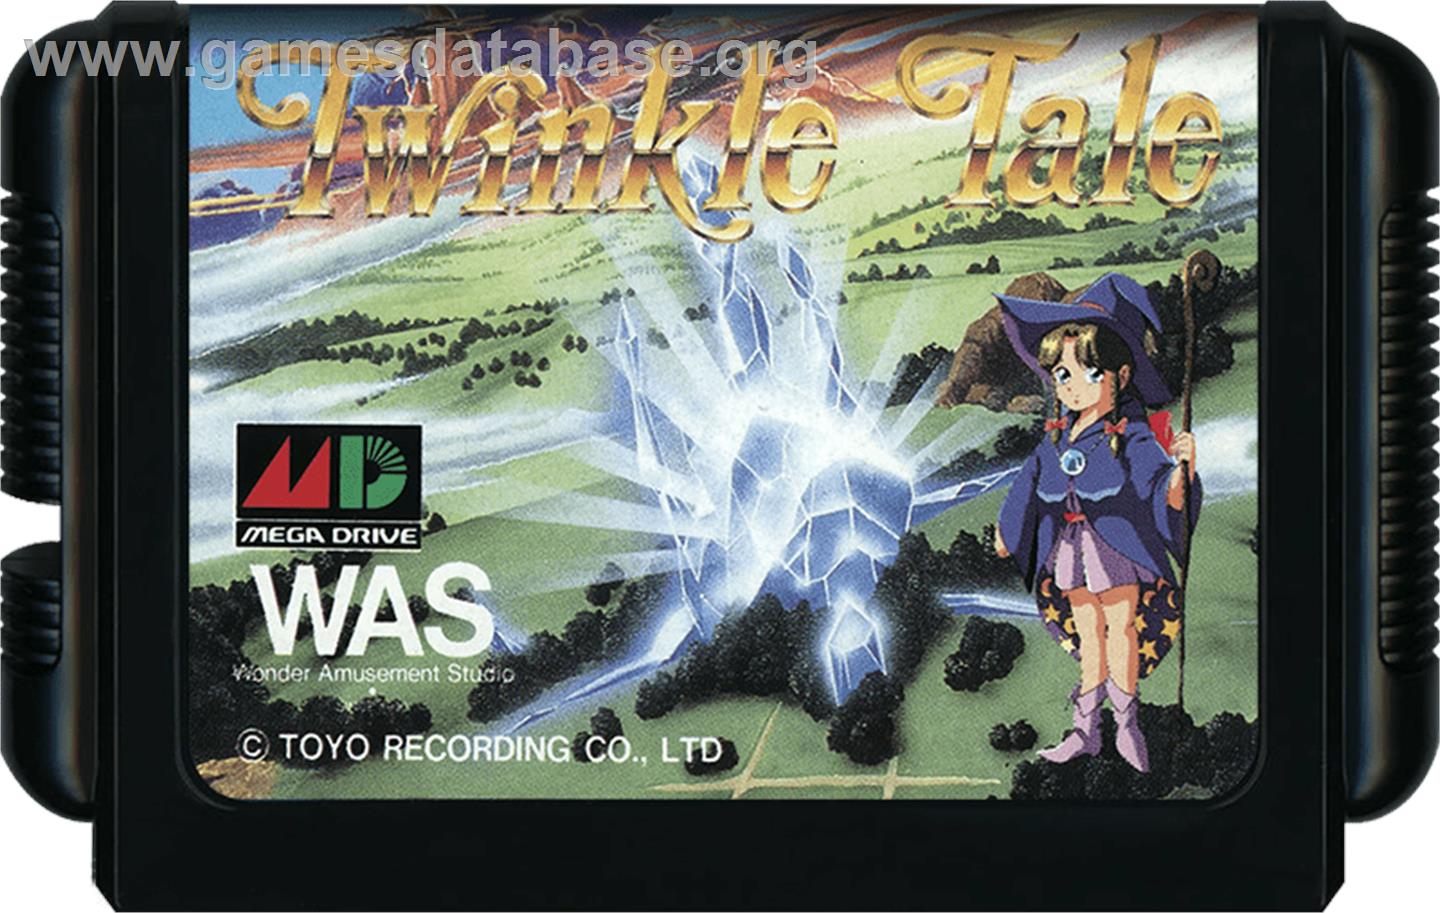 Twinkle Tale - Sega Genesis - Artwork - Cartridge